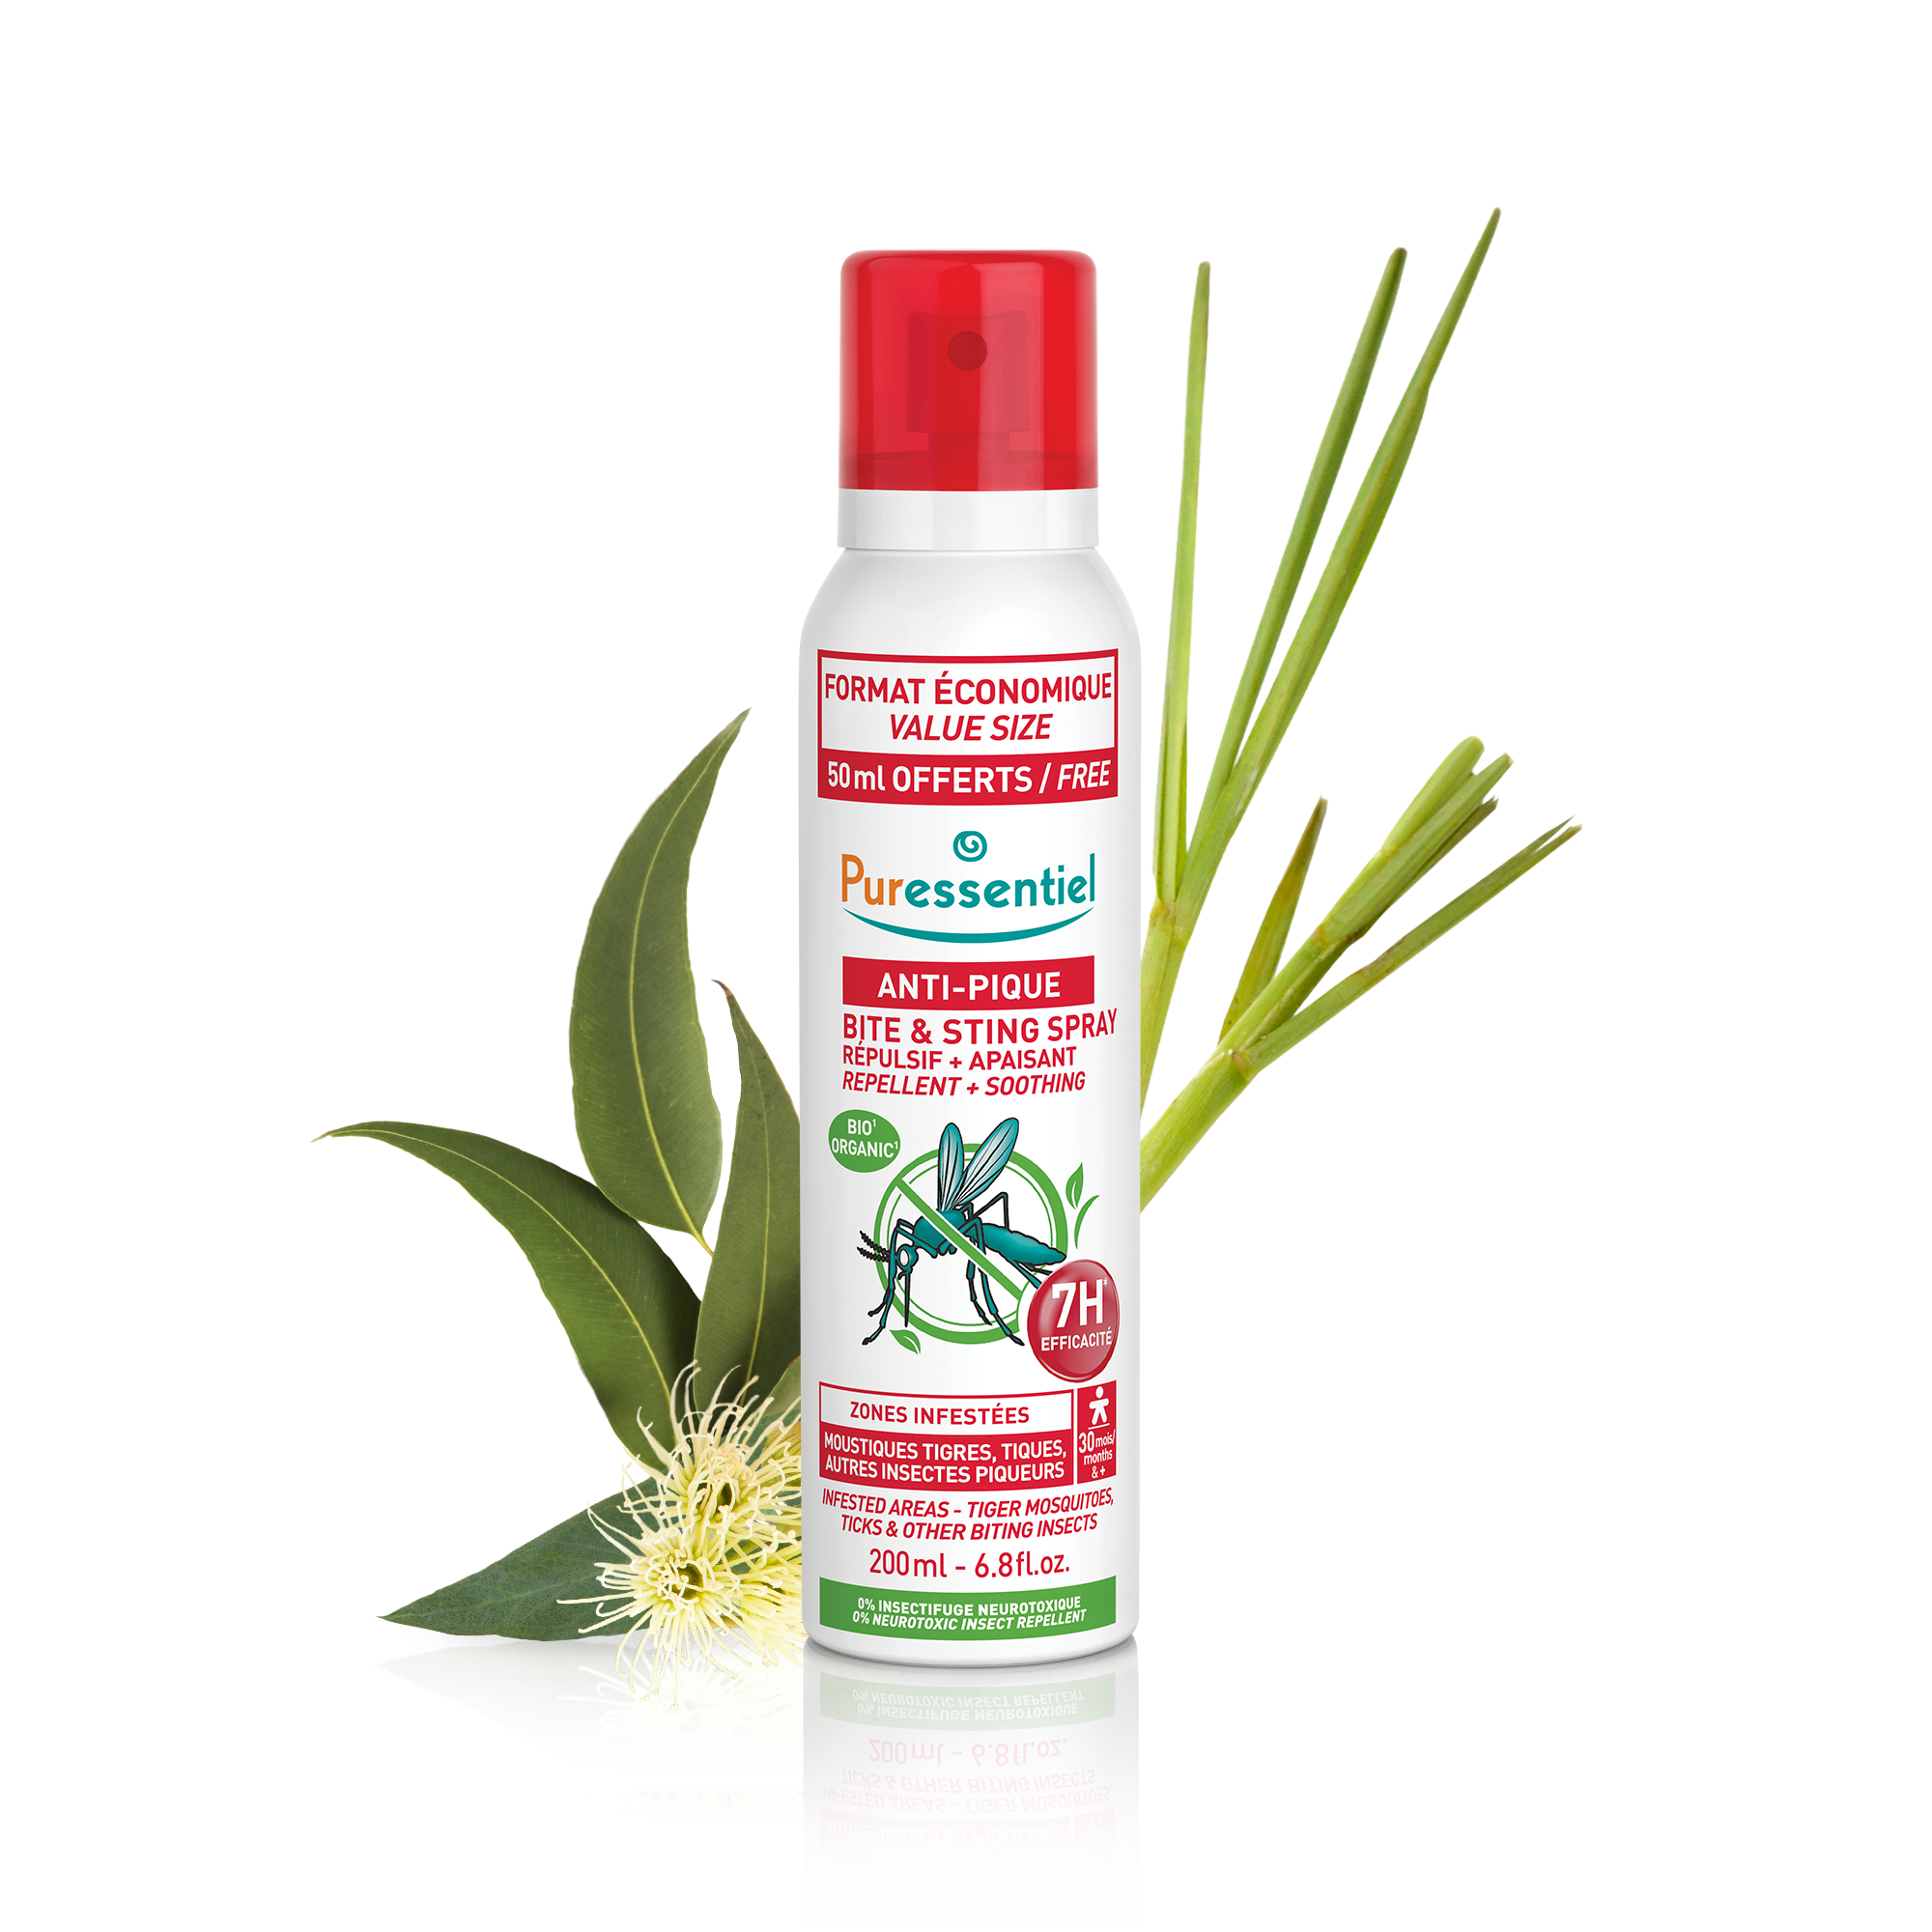 Puressentiel Spray Répulsif Anti-Insectes pour Vêtements et Tissus 150 ml  commander ici en ligne